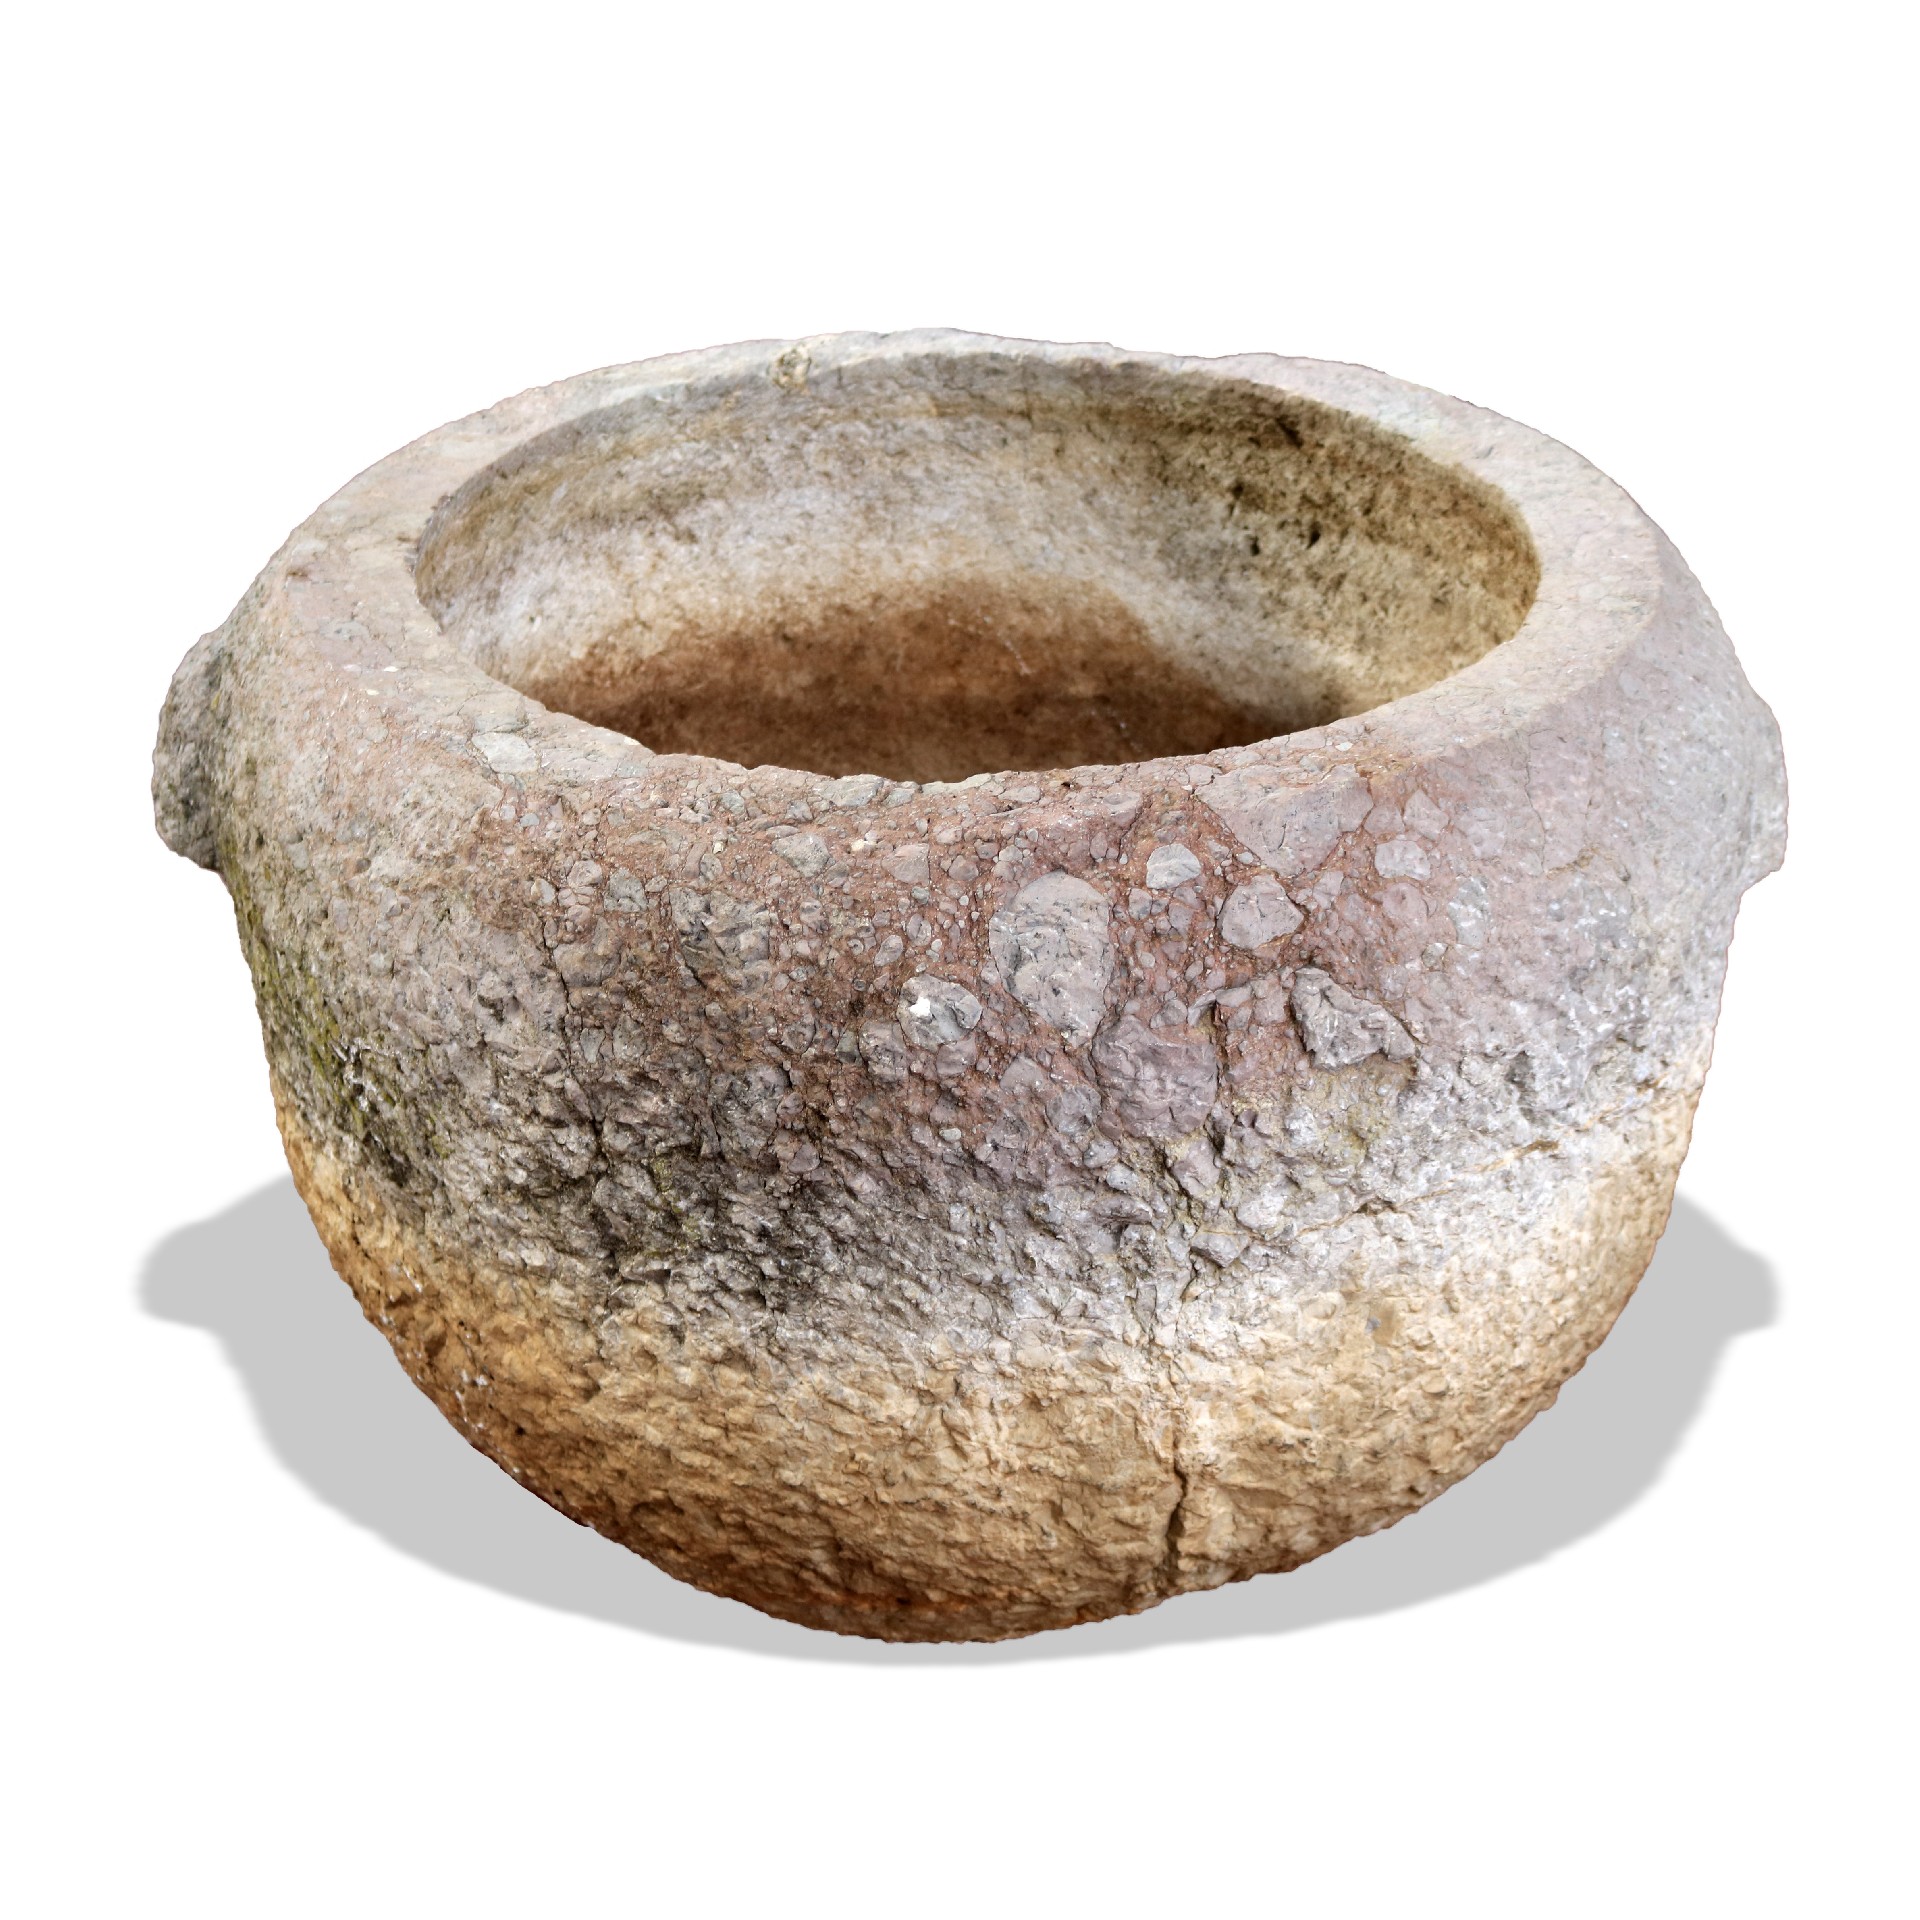 Antica vasca in pietra. - Fontane Antiche - Arredo Giardino - Prodotti - Antichità Fiorillo